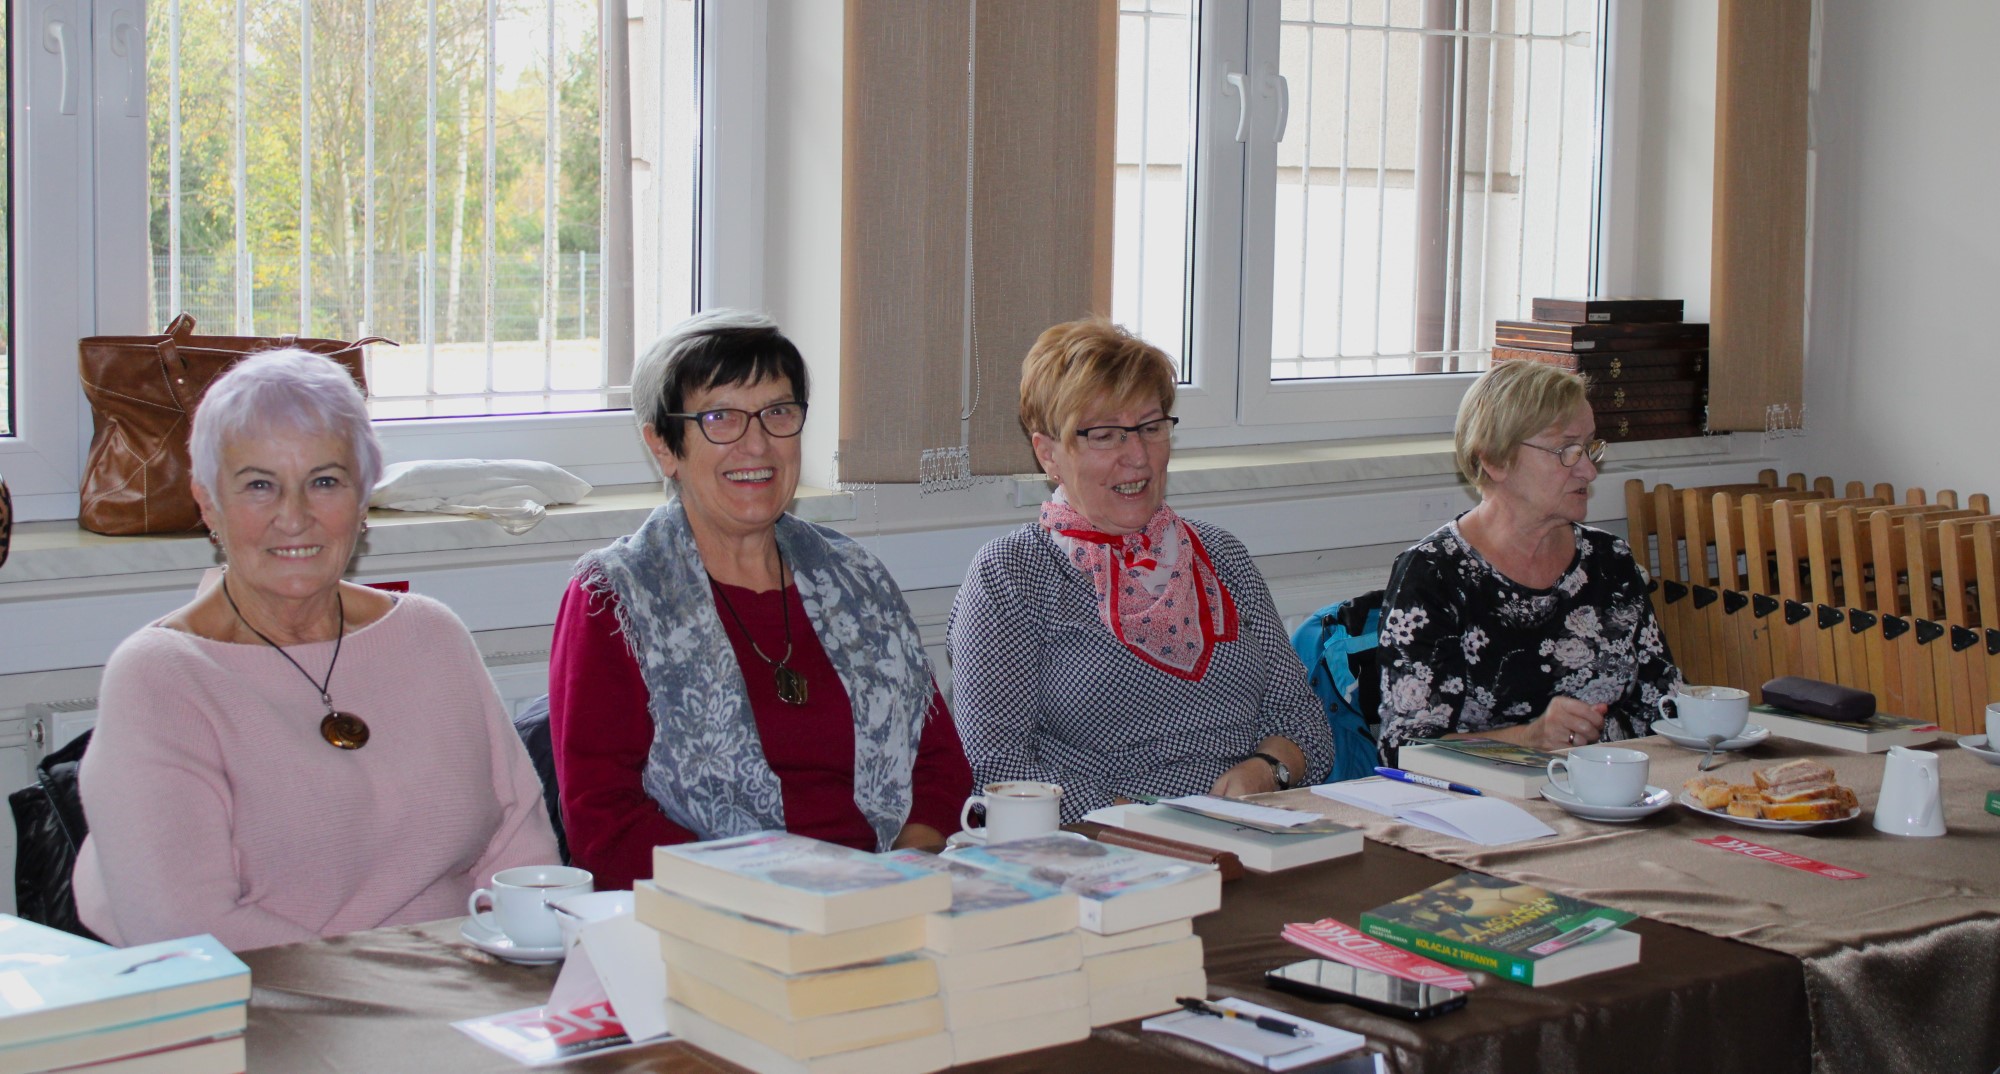 Przy stole siedzą cztery kobiety. Na stole książki i filiżanki z kawą